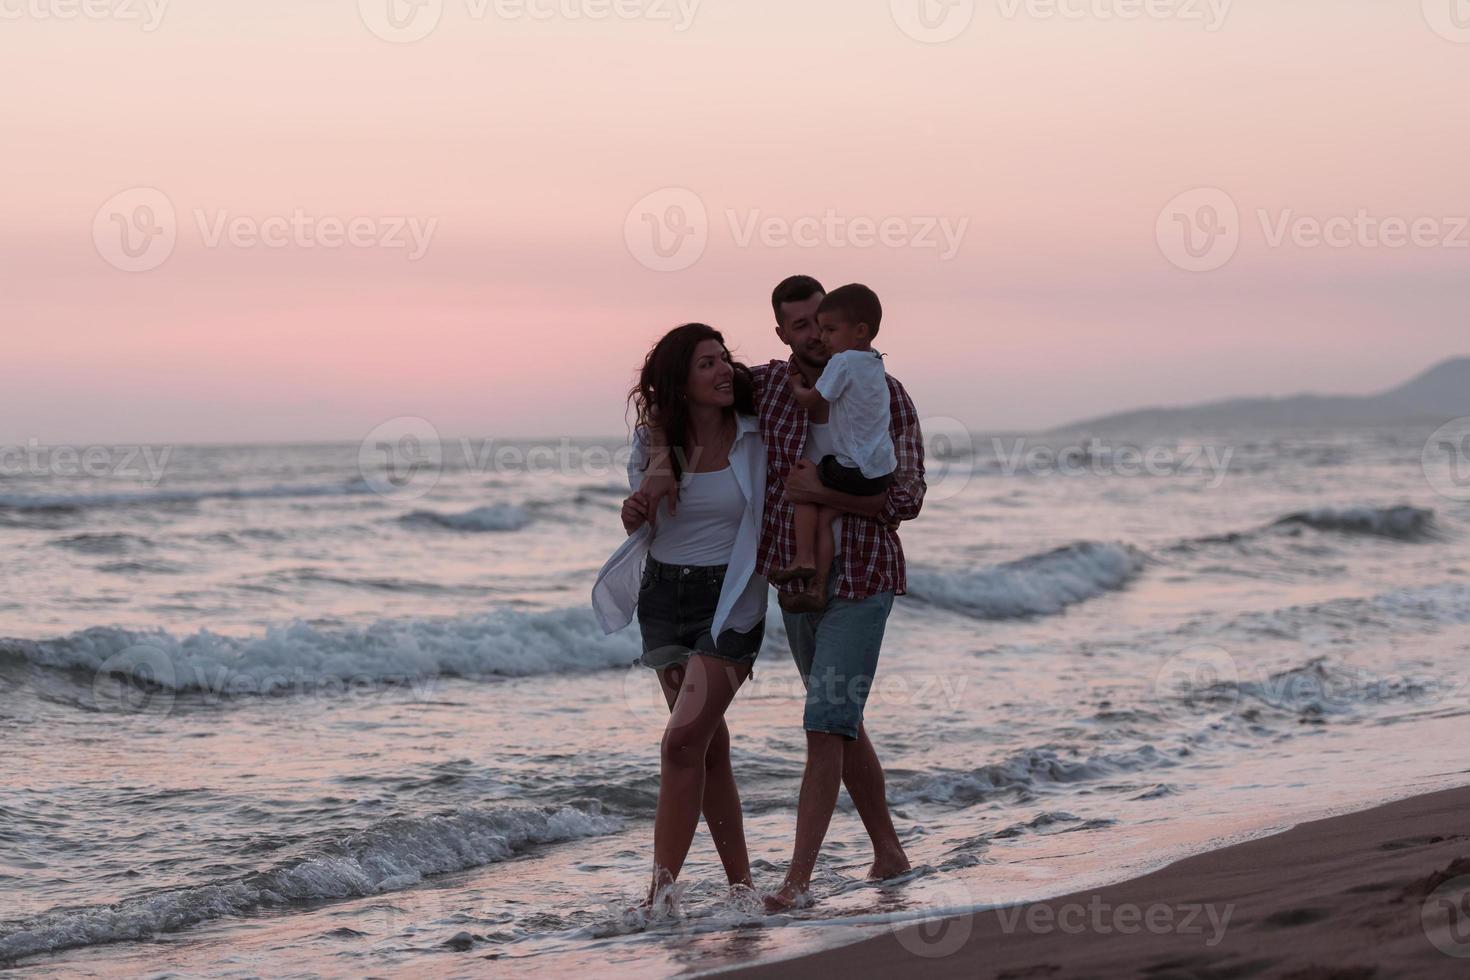 de familie geniet hun vakantie net zo ze wandelen de zanderig strand met hun zoon. selectief focus foto